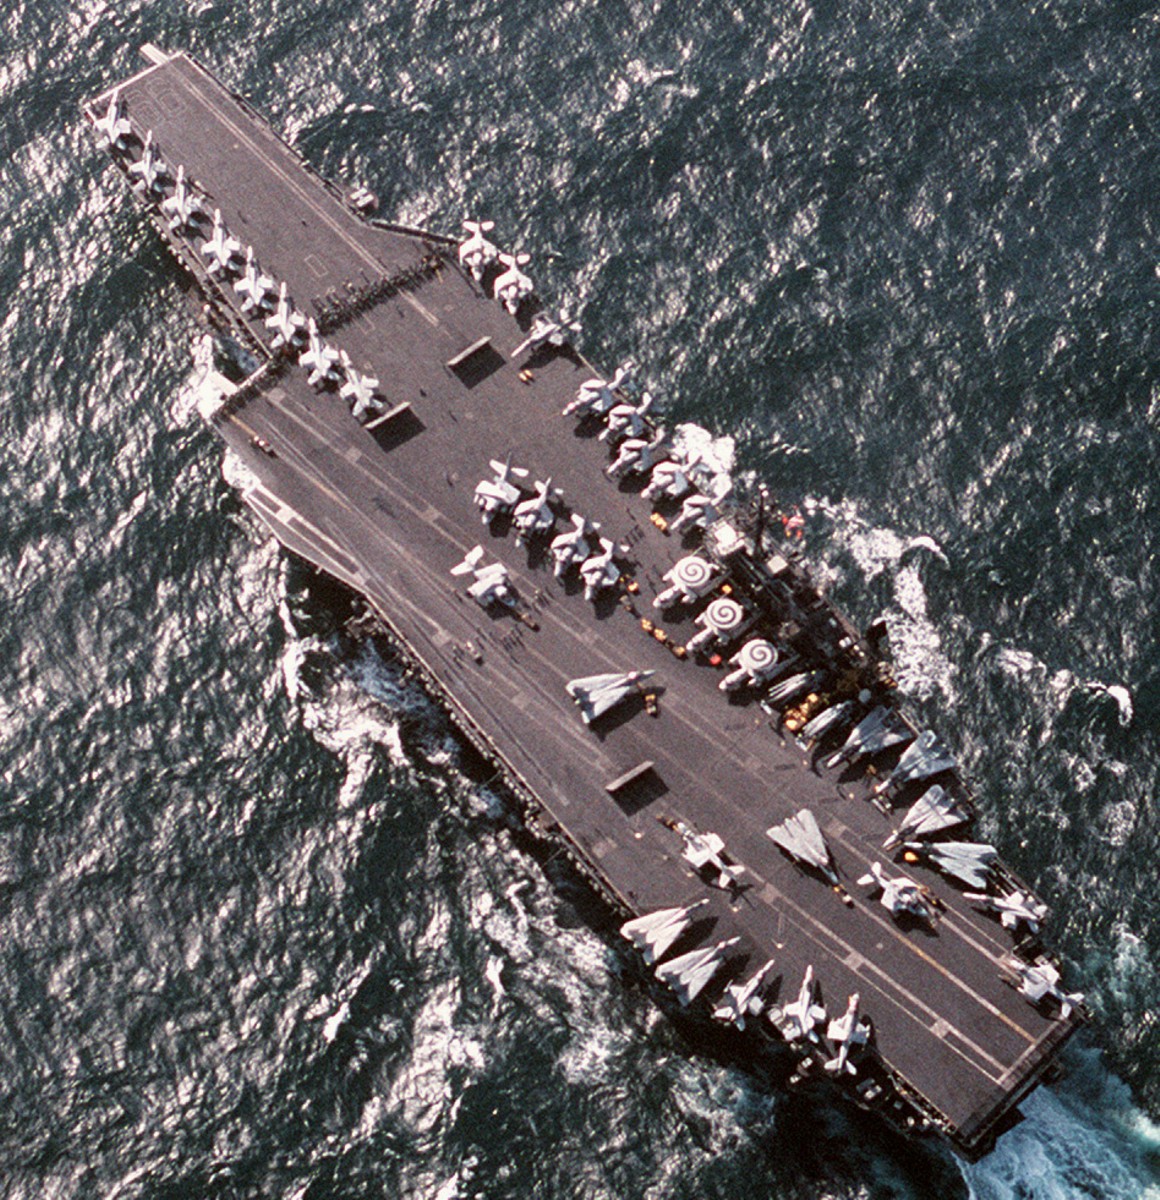 cv-66 uss america kitty hawk class aircraft carrier air wing cvw-1 us navy operation desert storm 1991 98